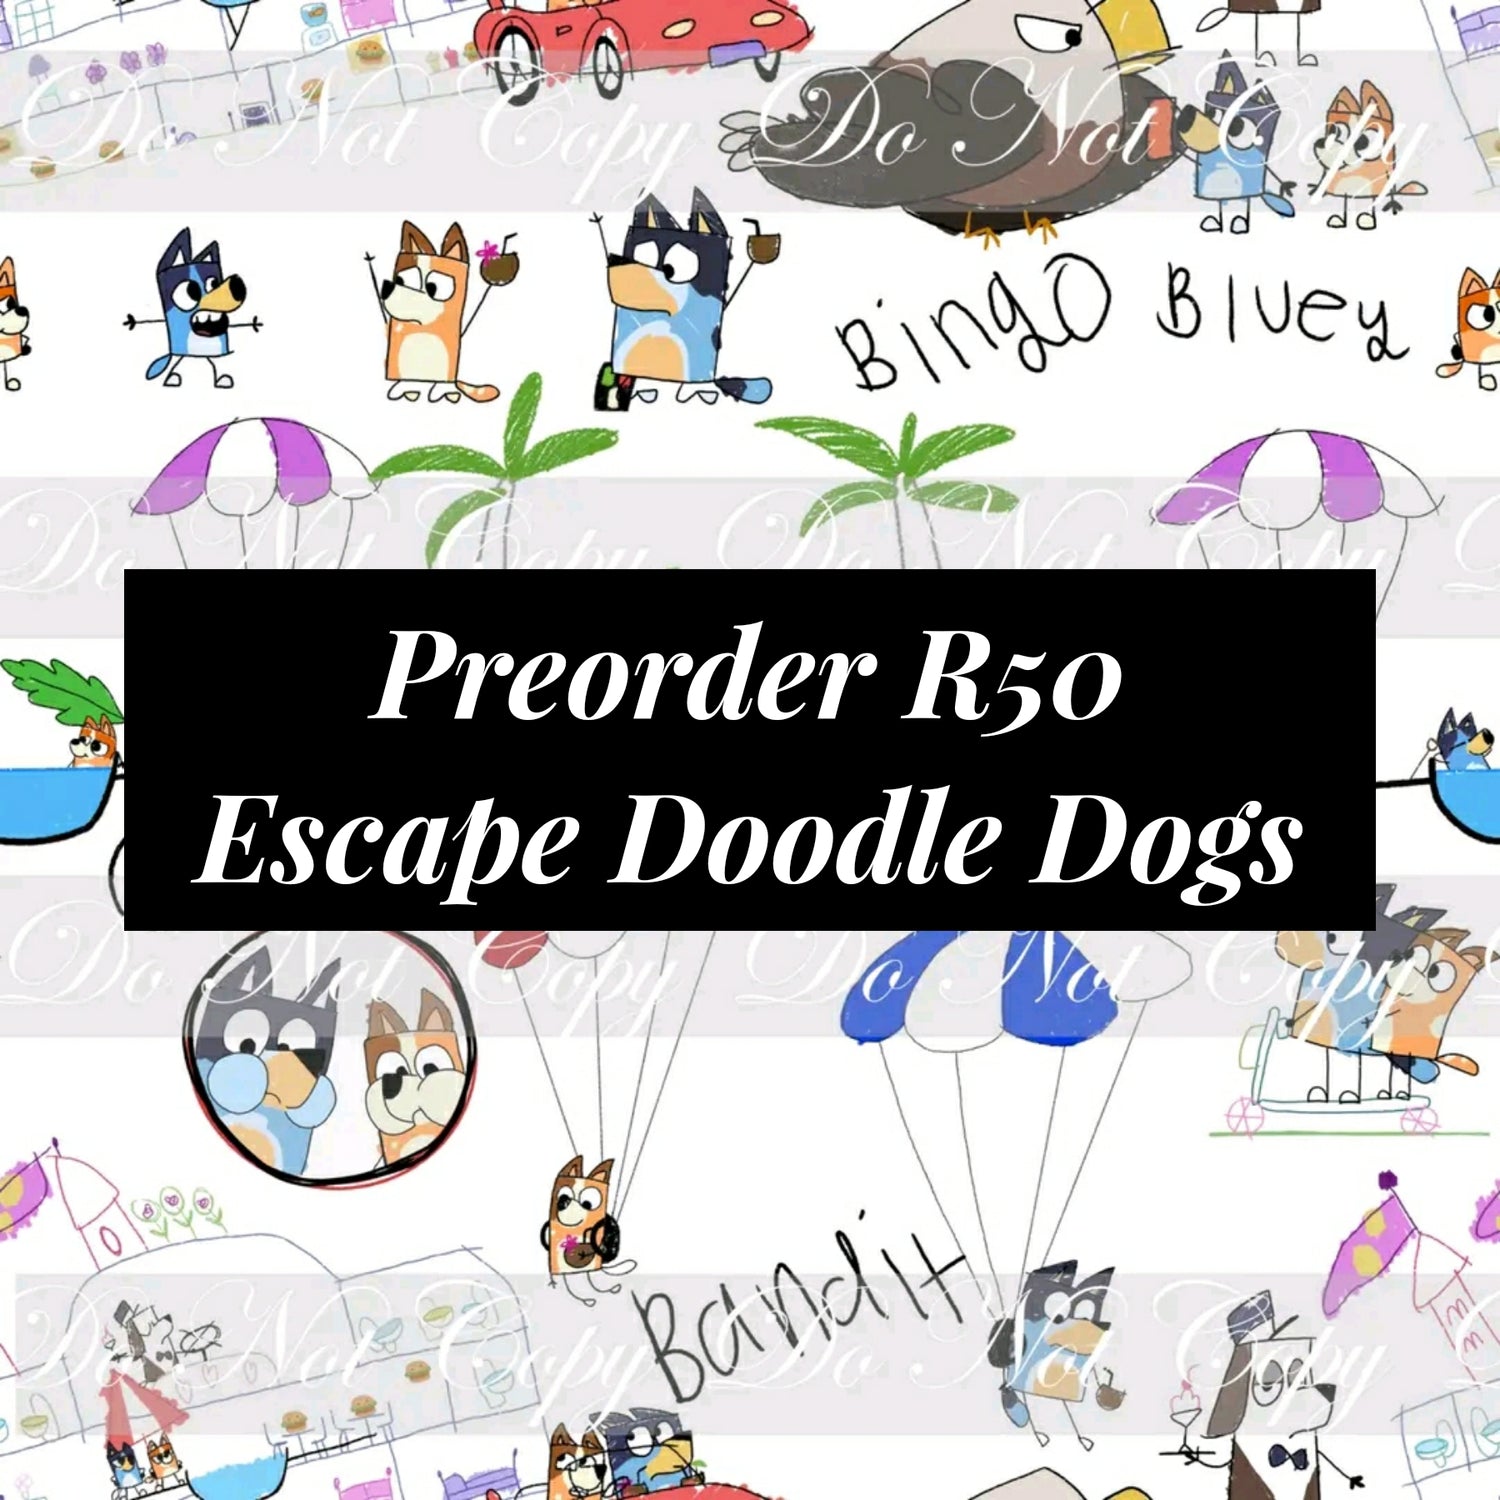 Preorder R50 Escape Doodle Dogs